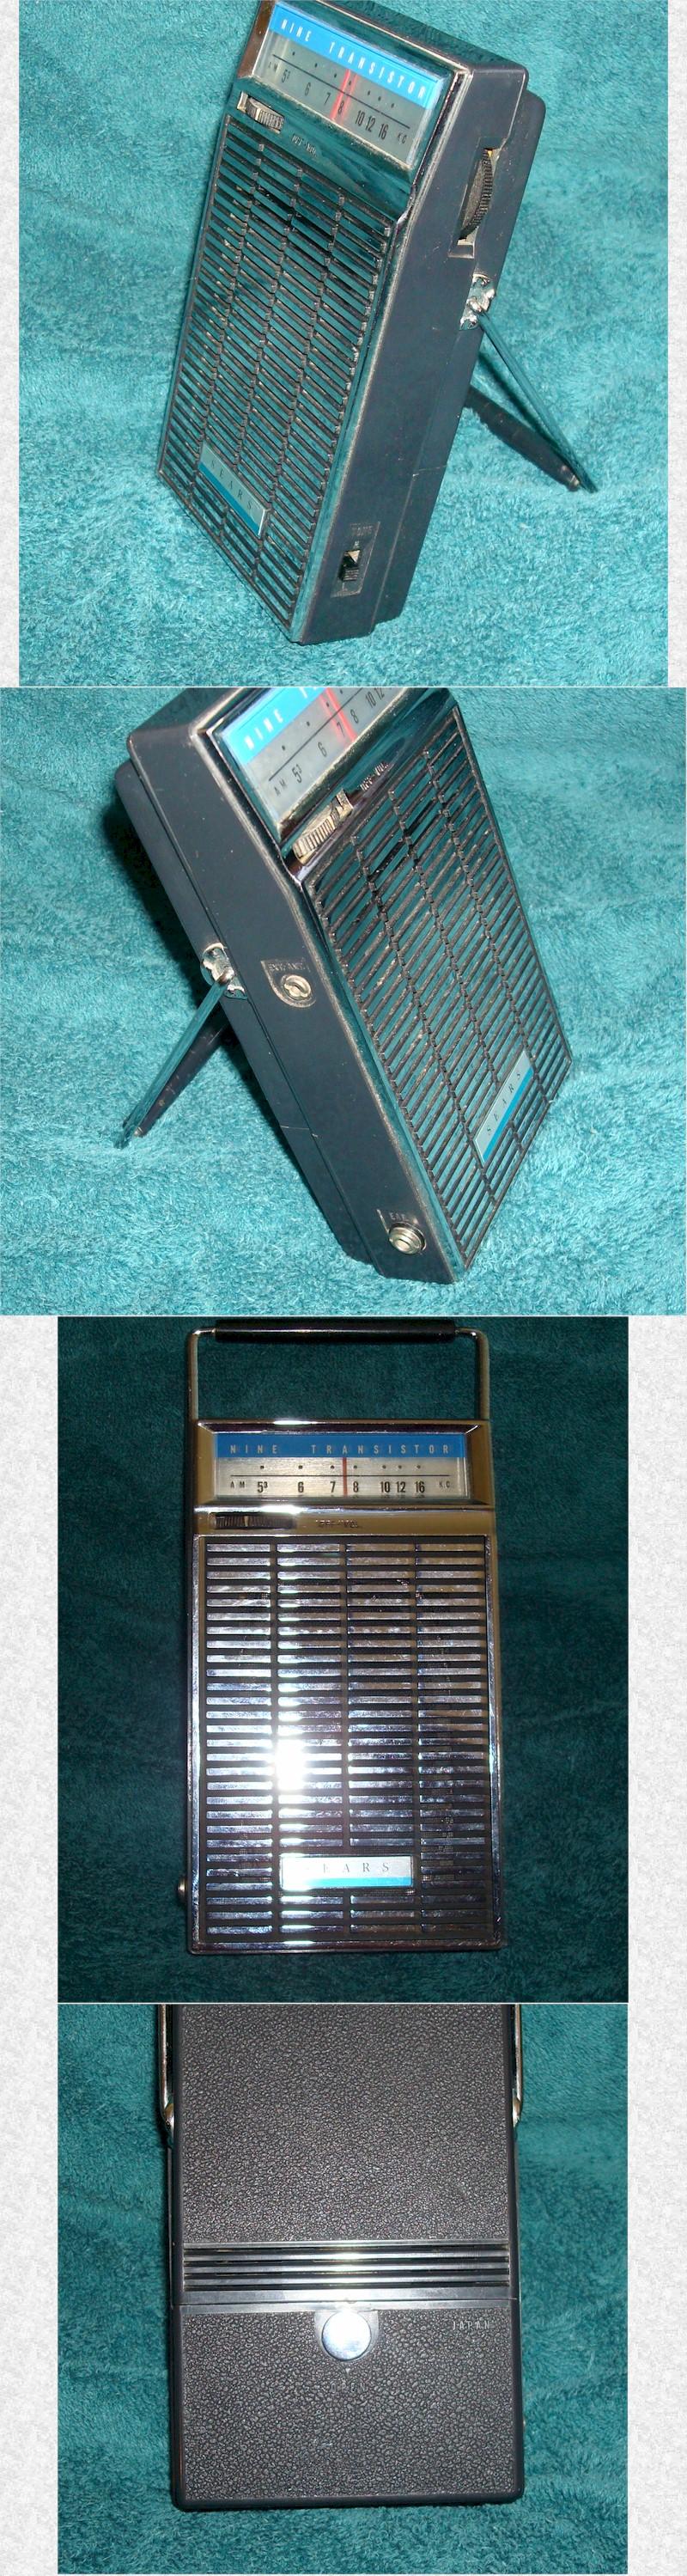 Sears 5212 Pocket Transistor